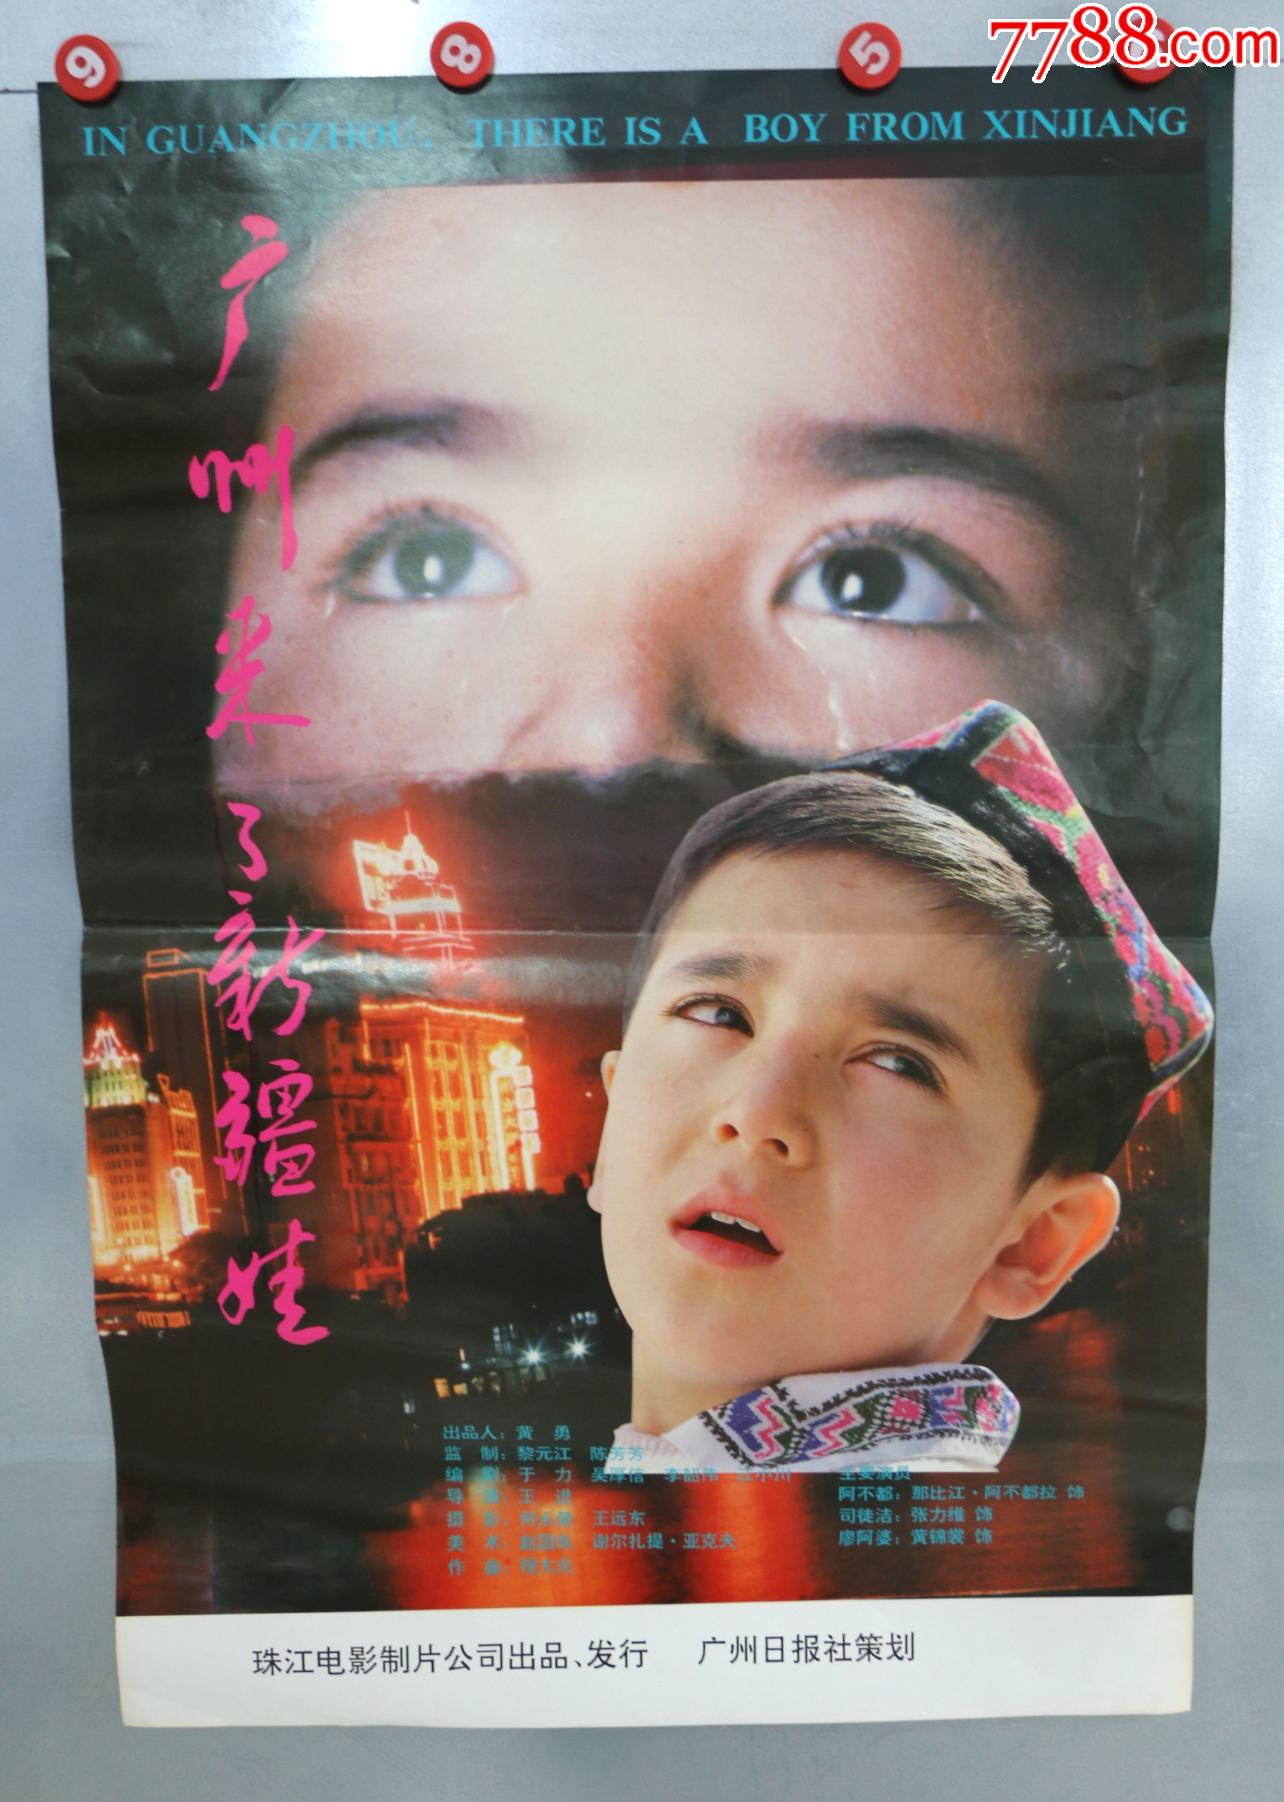 广州来了新疆娃(海报版)-价格:5元-au25176357-电影